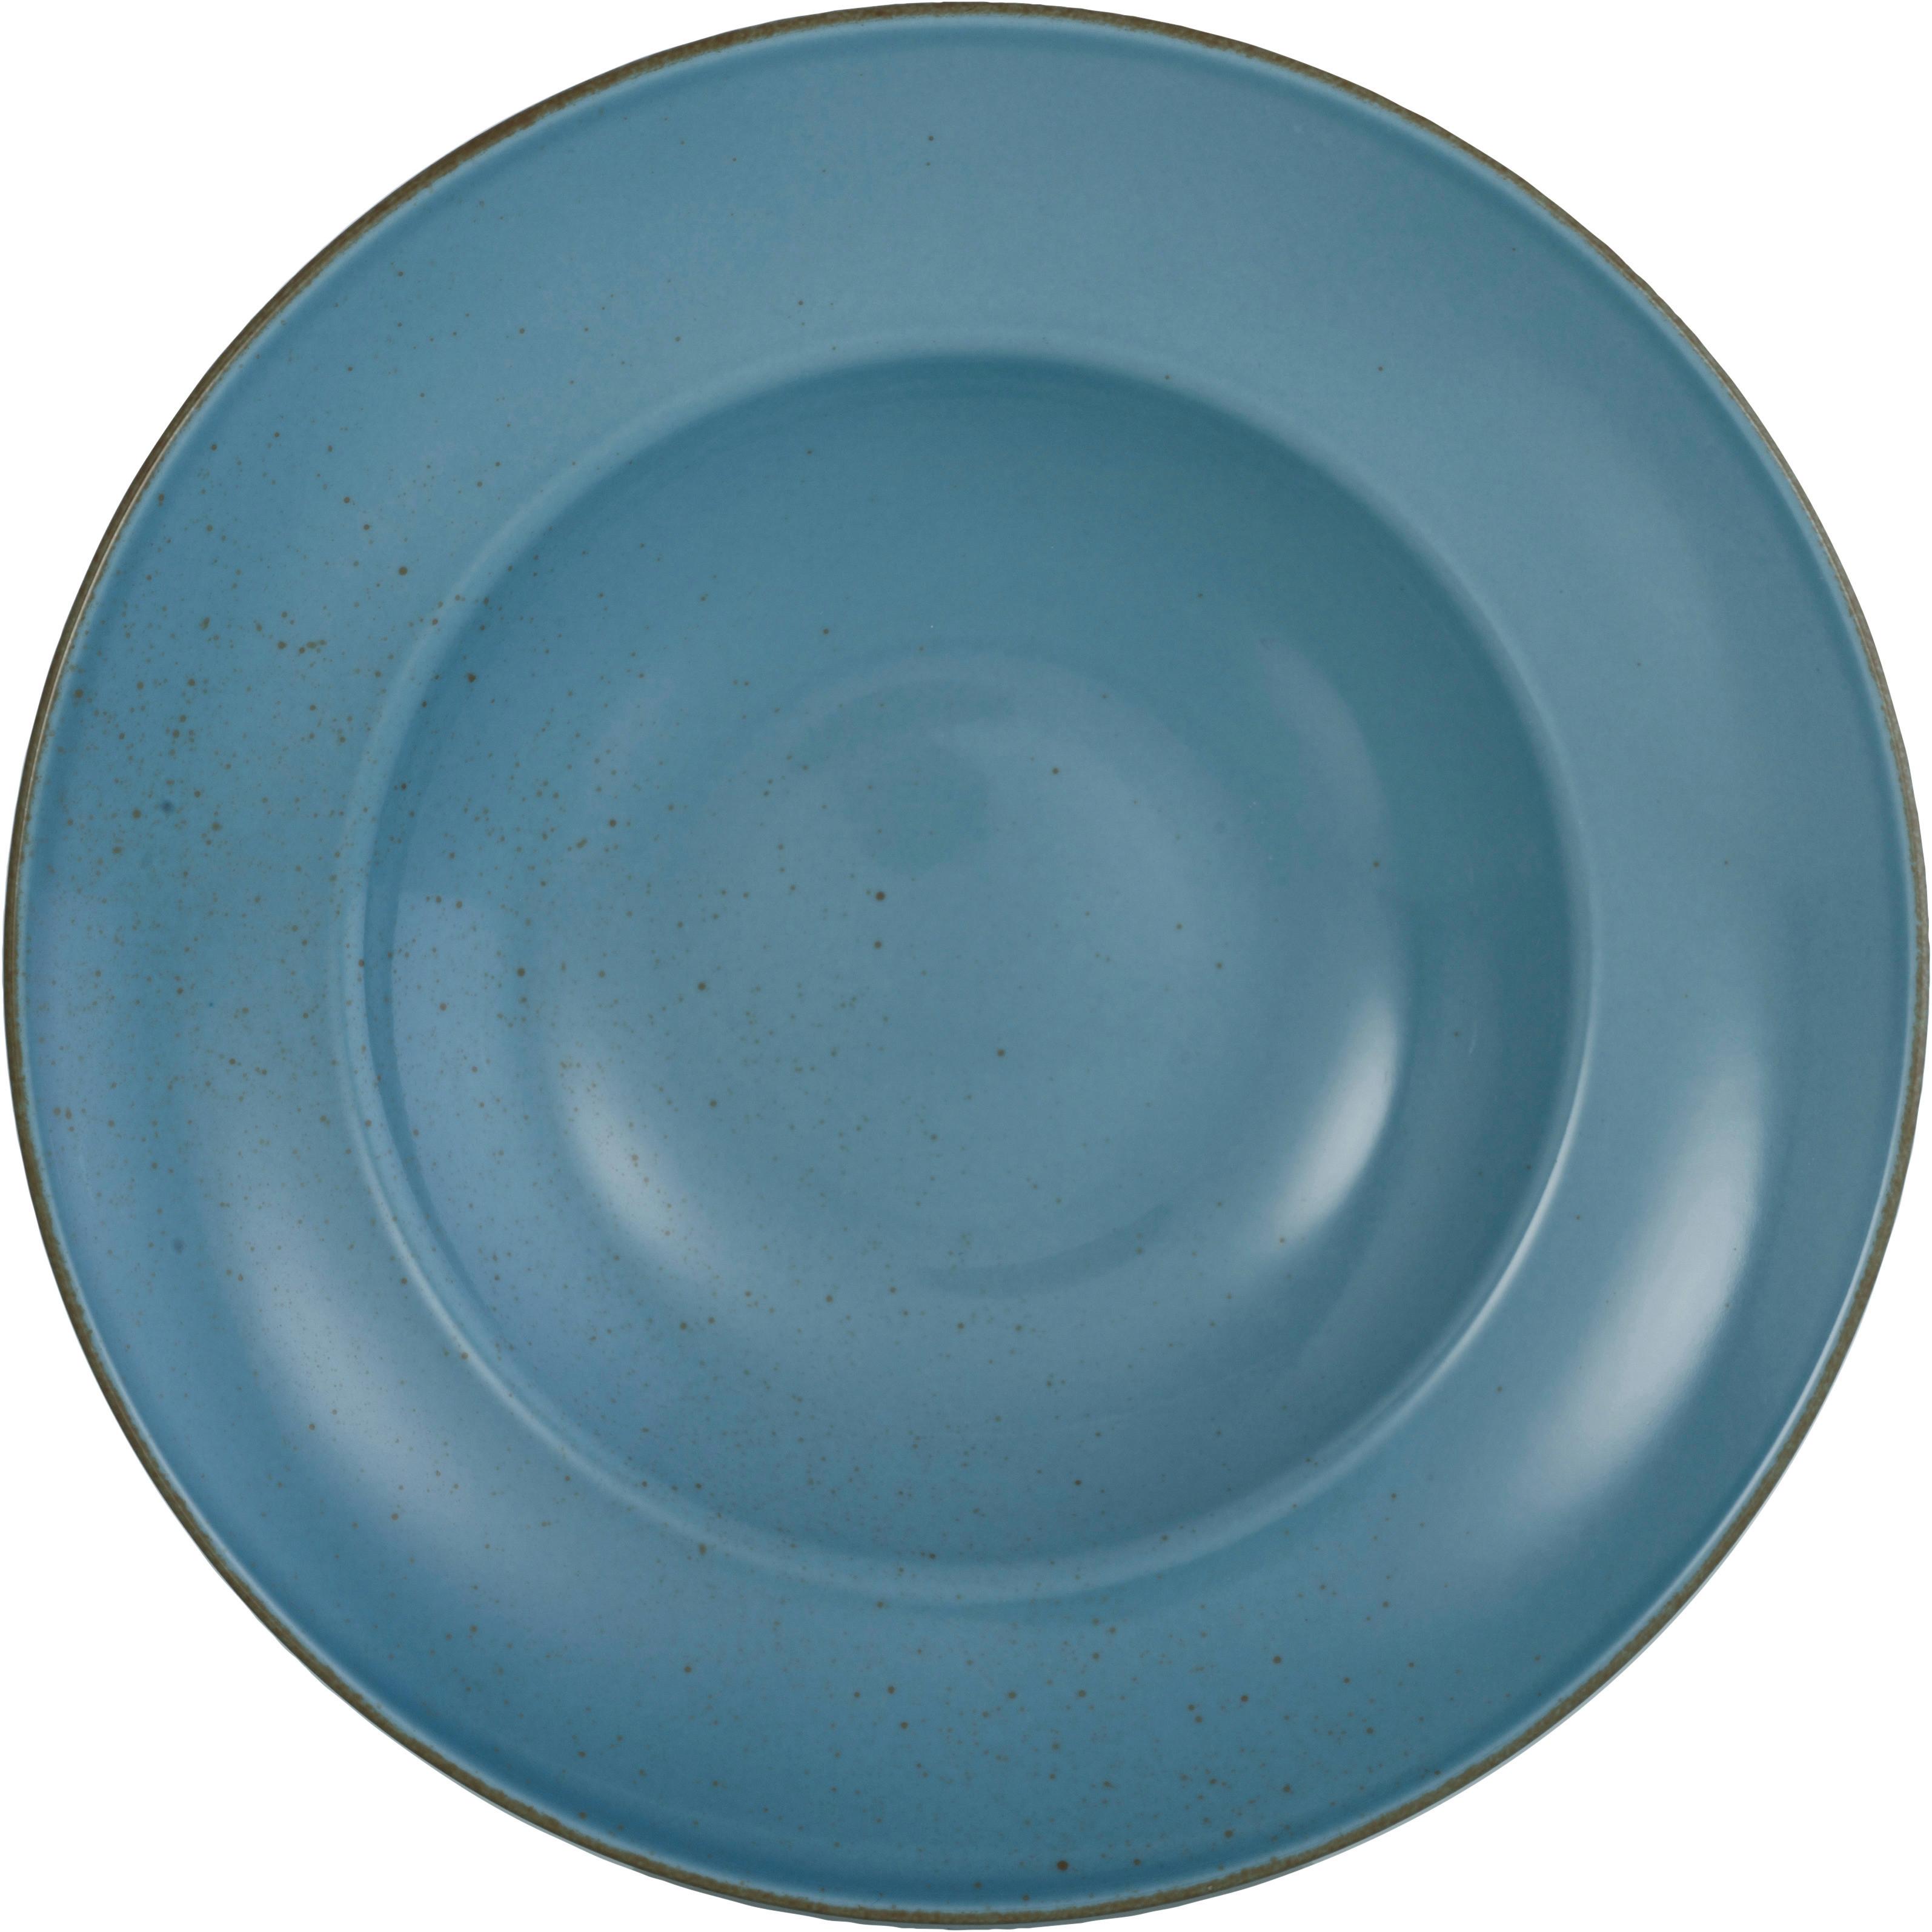 Talíř Na Těstoviny Capri, Ø: 27cm - modrá, Moderní, keramika (27/27/4cm) - Premium Living